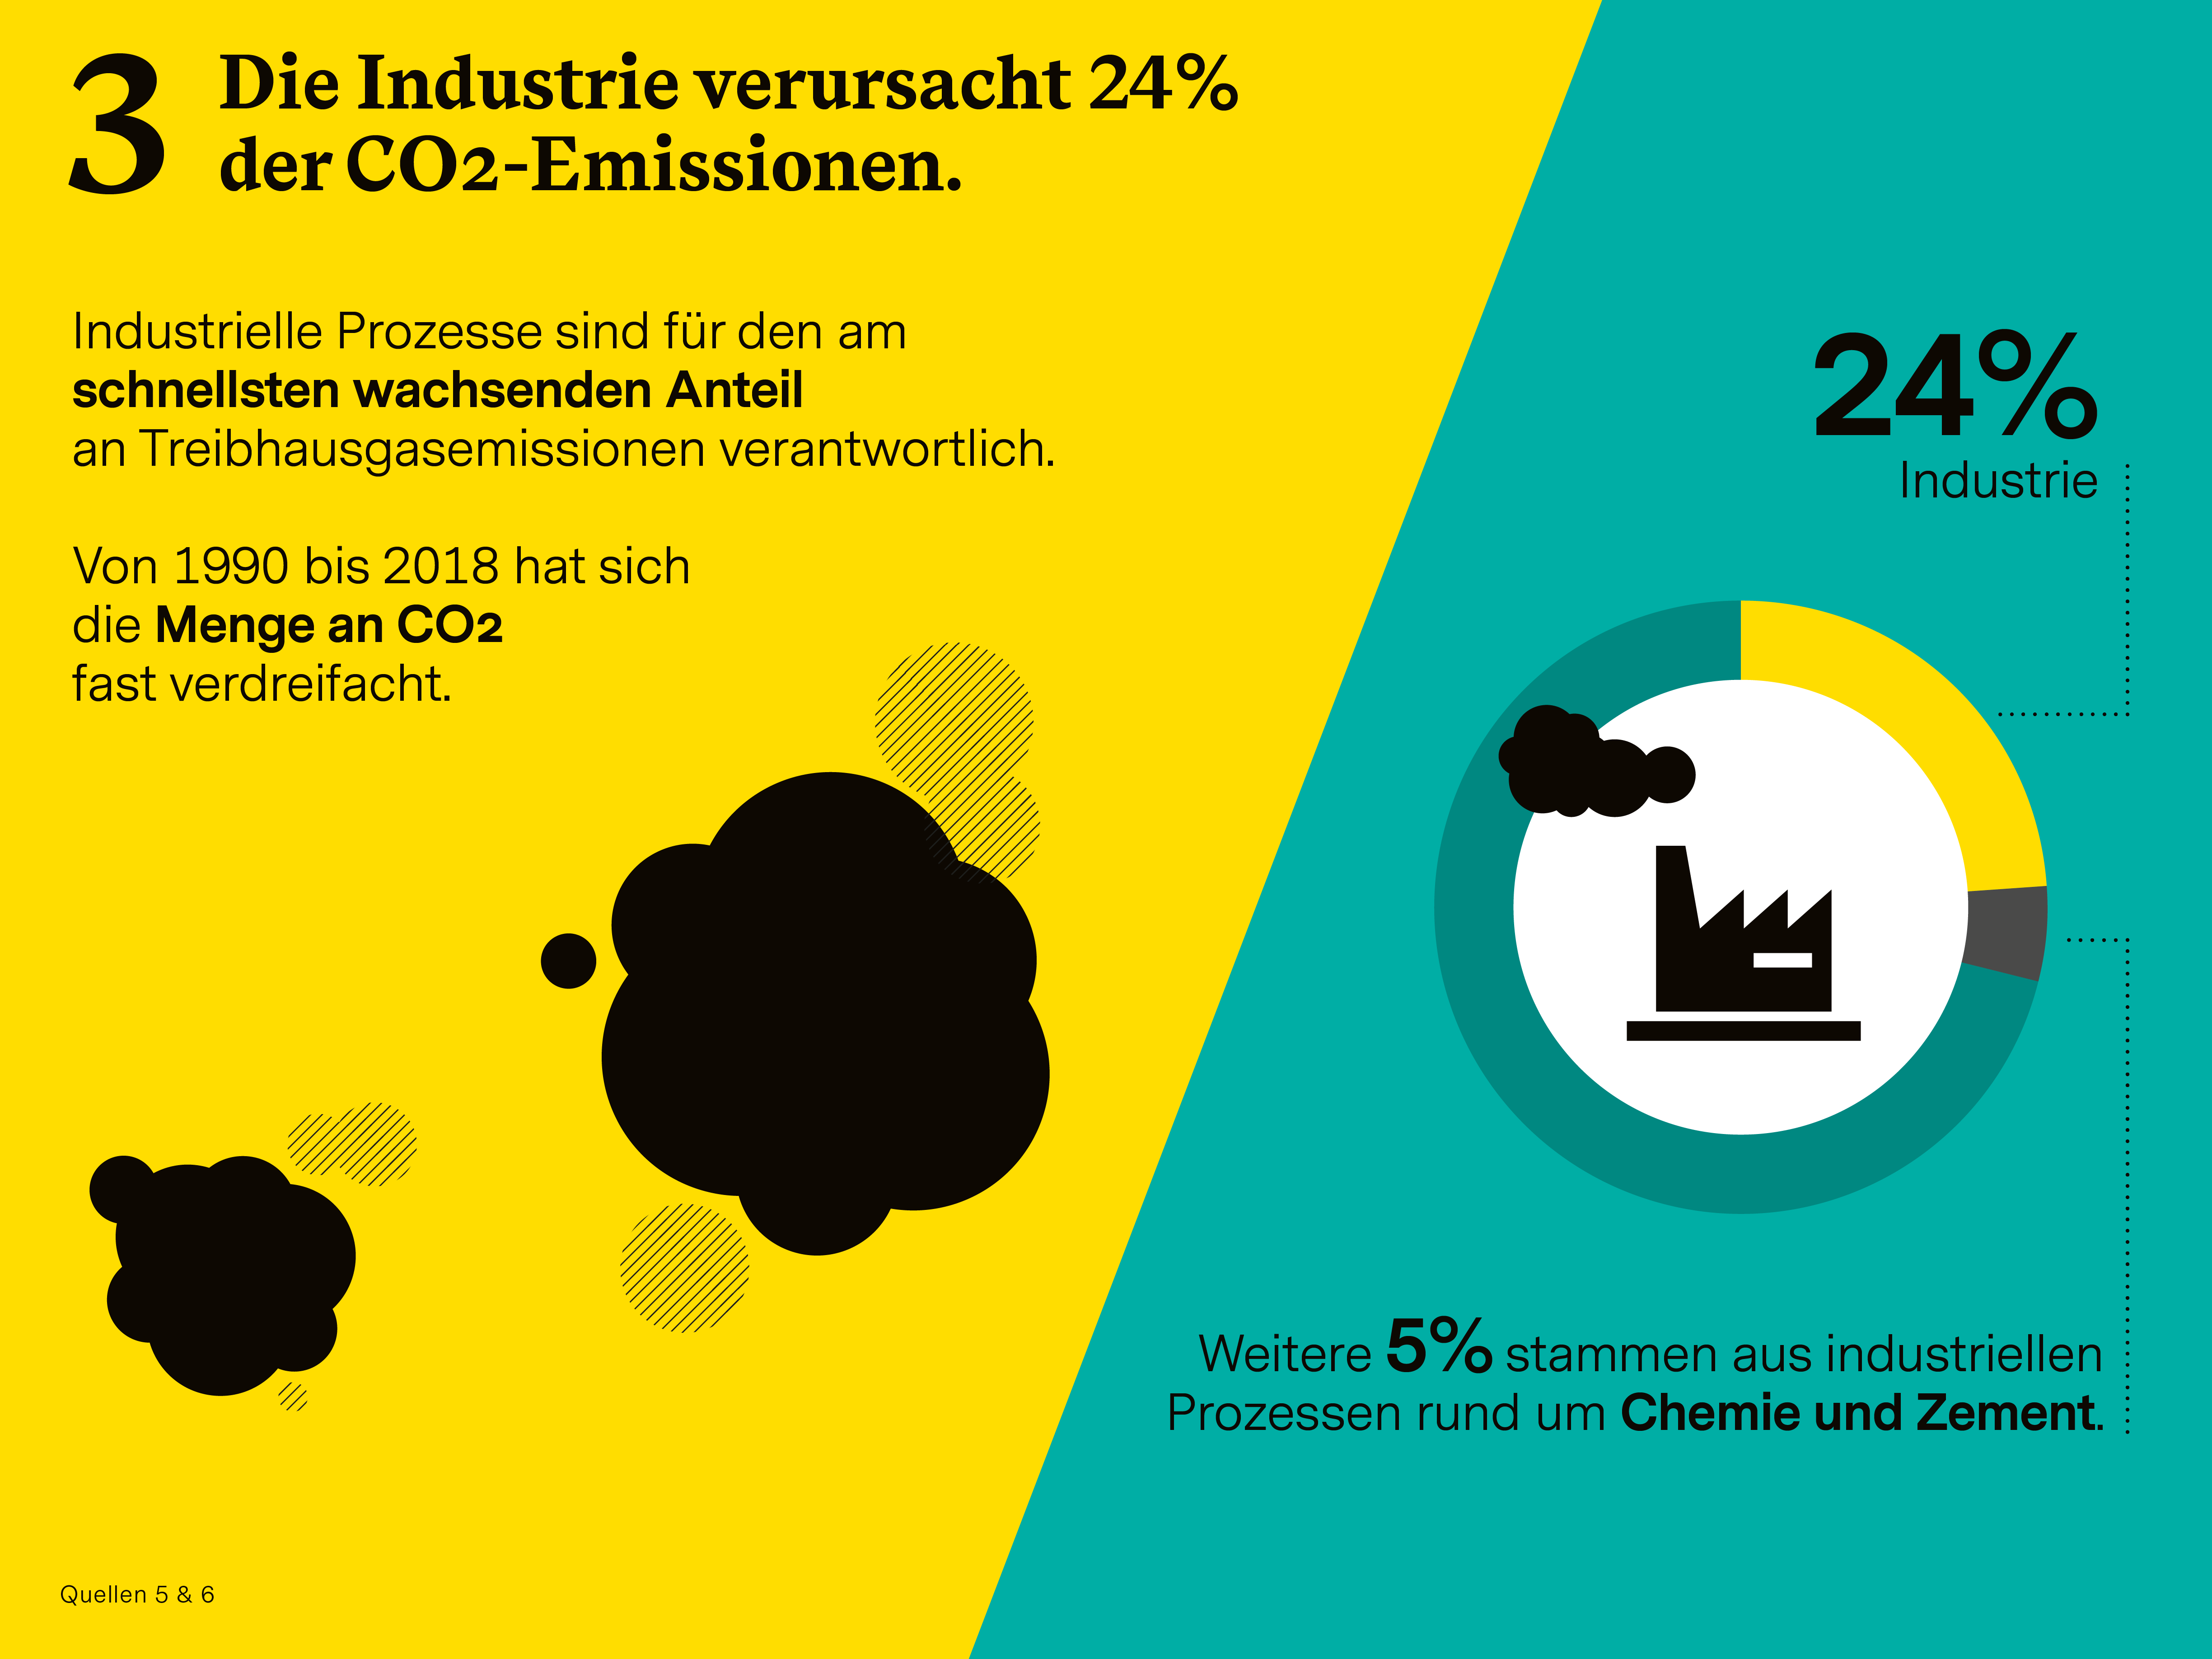 Infografik zum Thema "Ressourcen-effiziente Industrie" (Teil 3 der Serie "6 Wirtschafts-Bereiche für Impact Investing")